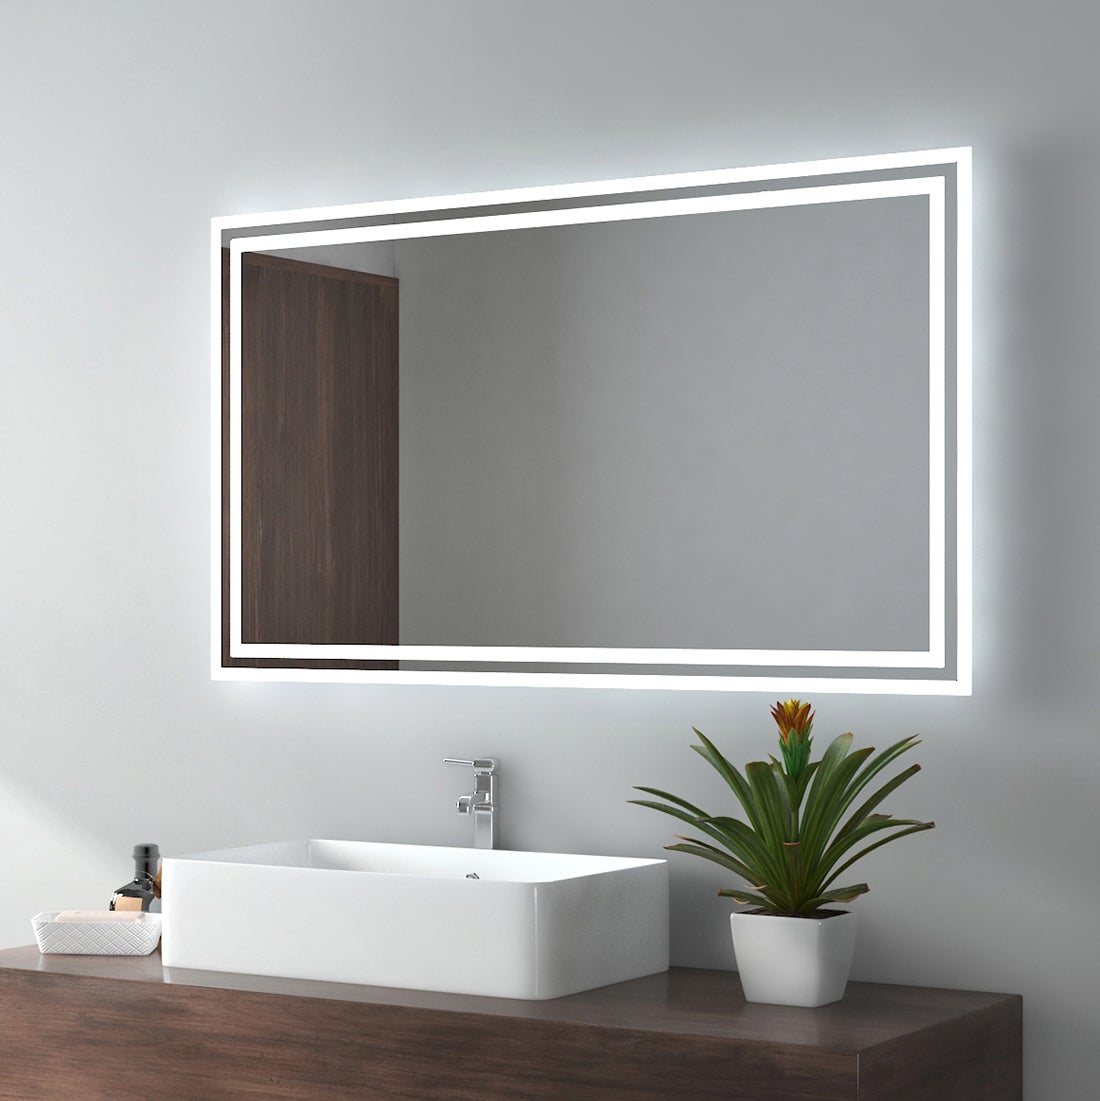 EMKE Badspiegel LED IP44 Wasserdicht Wandspiegel, 100x60cm, Kaltweißes/Warmweißes Licht, Knopfschalter, Beschlagfrei